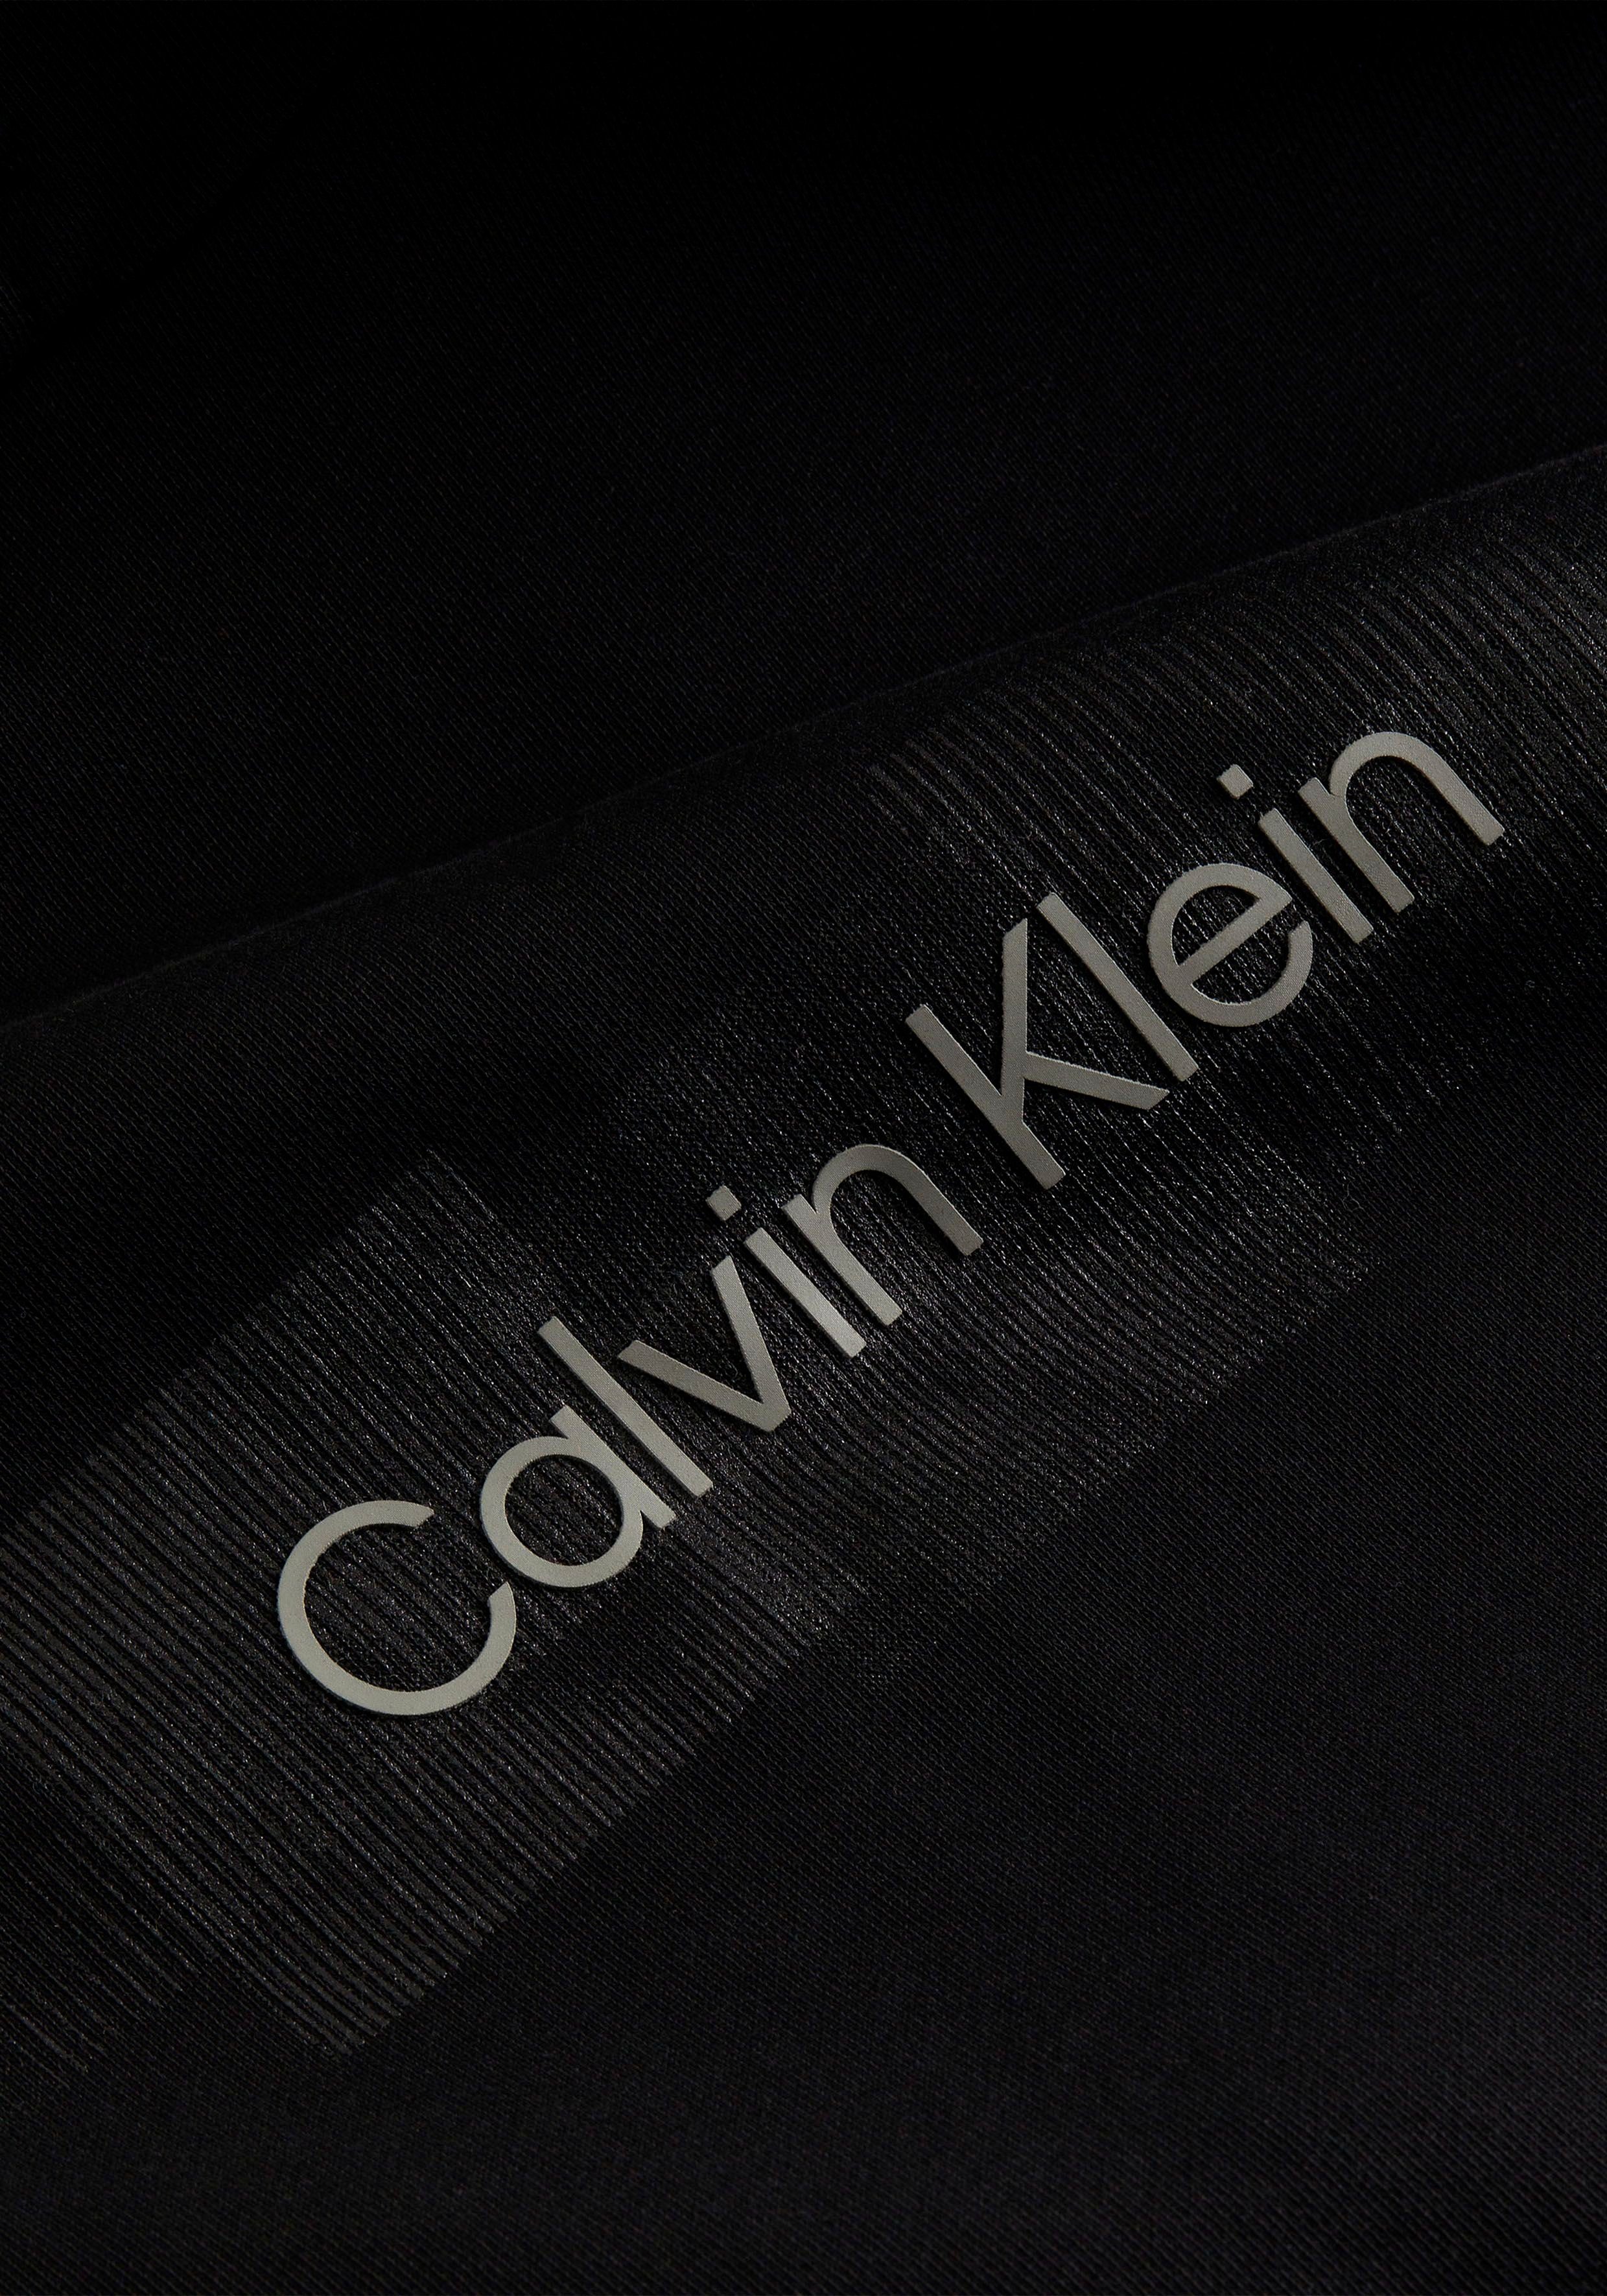 BOX Klein der LOGO an Calvin HOODIE Kordelzug mit STRIPED Kapuze Kapuzensweatshirt Black Ck